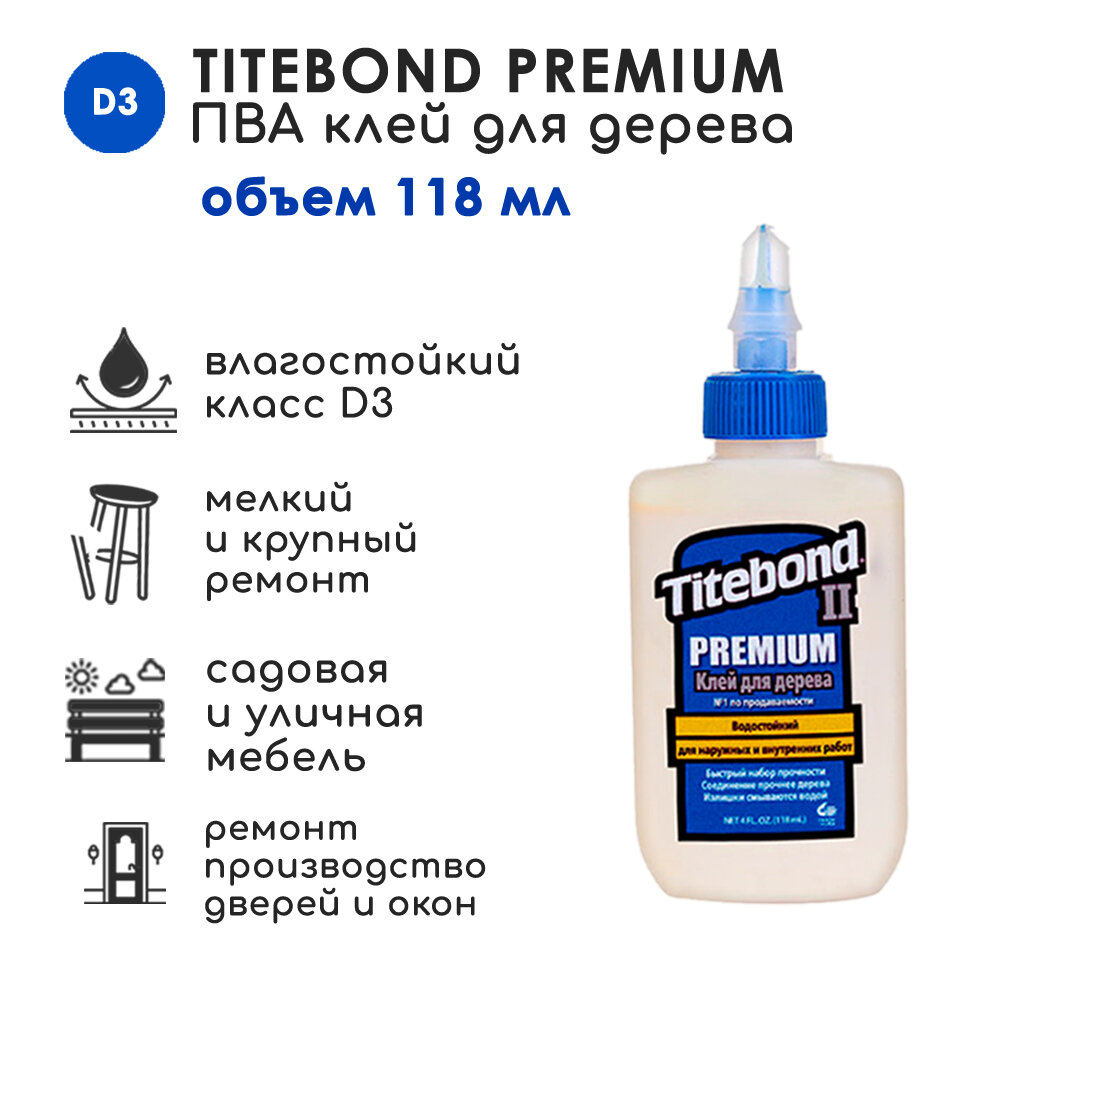 Клей столярный ПВА Titebond II Premium Wood Glue влагостойкий